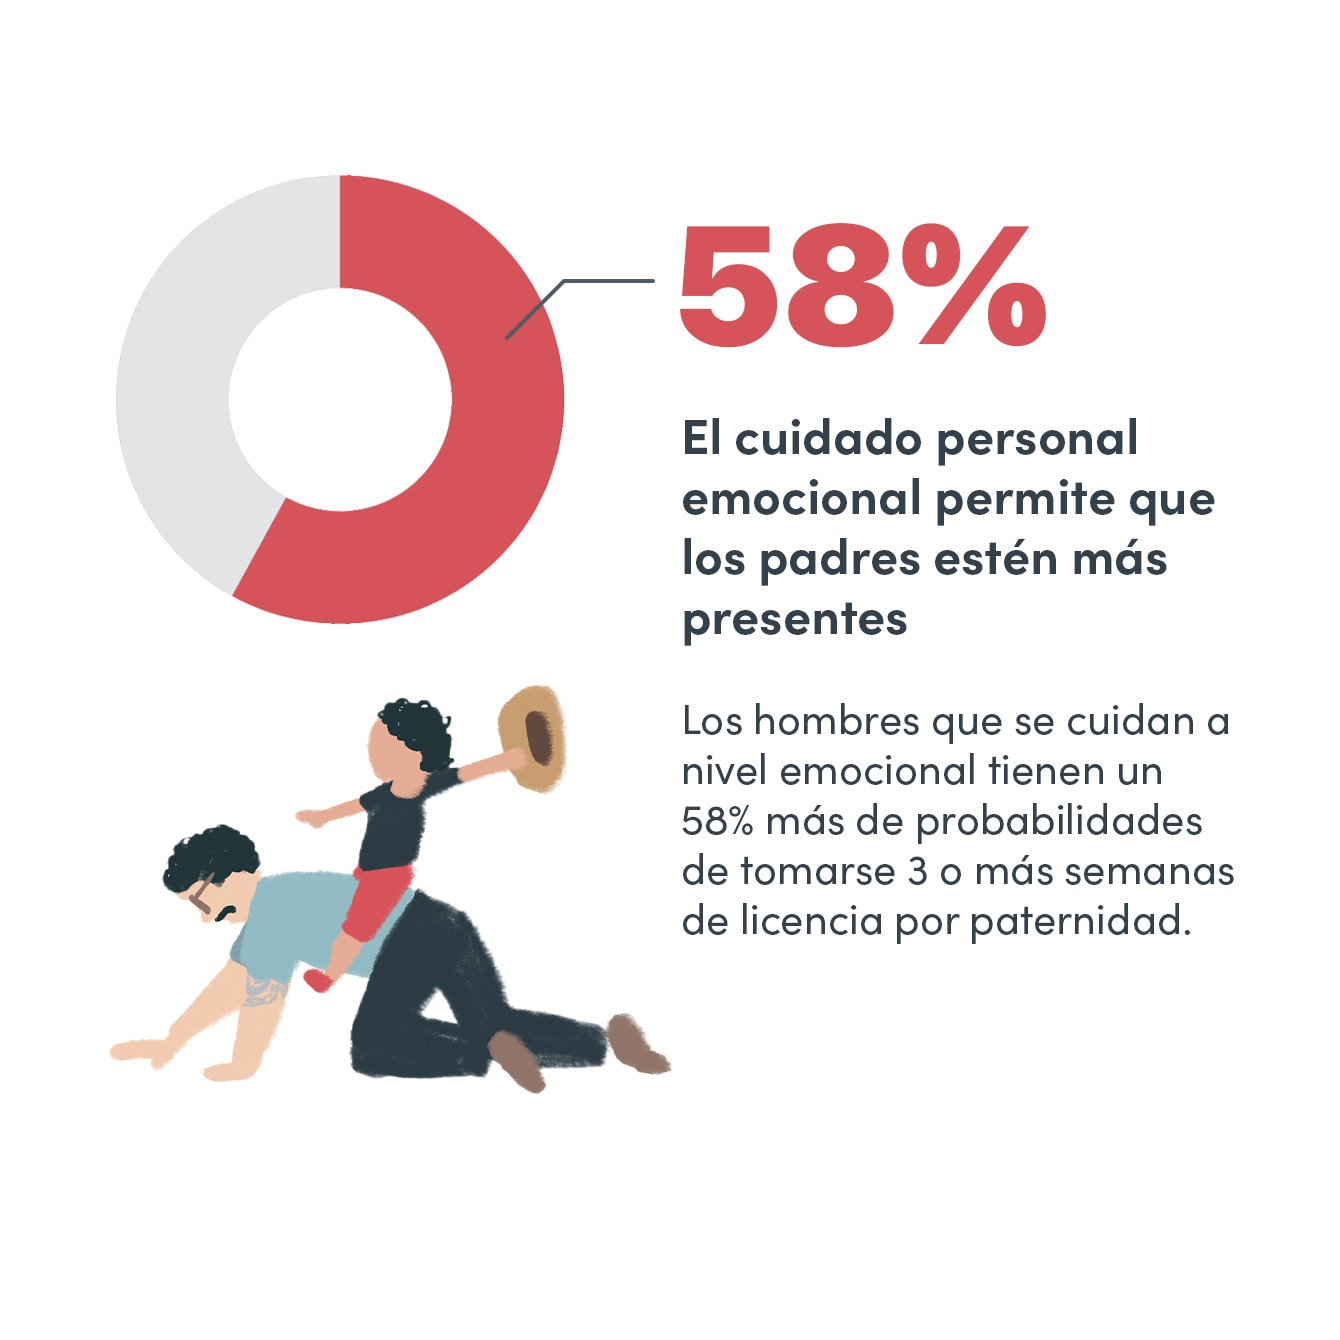 58 % El cuidado personal emocional permite que los padres estén más presentes.